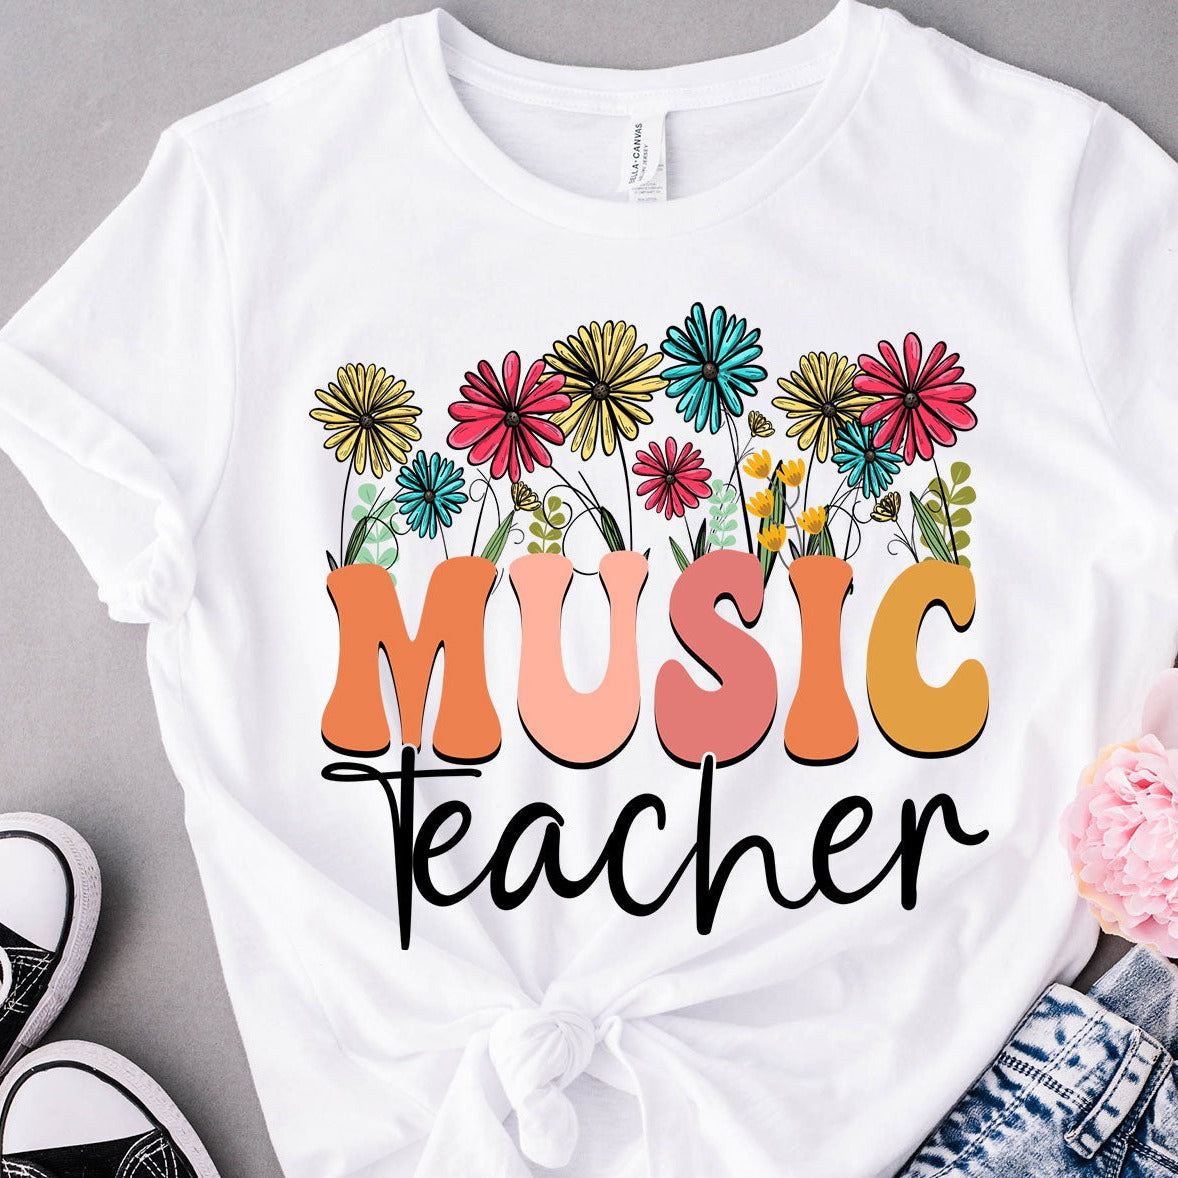 Music Teacher - Unisex Heavy Cotton Tee